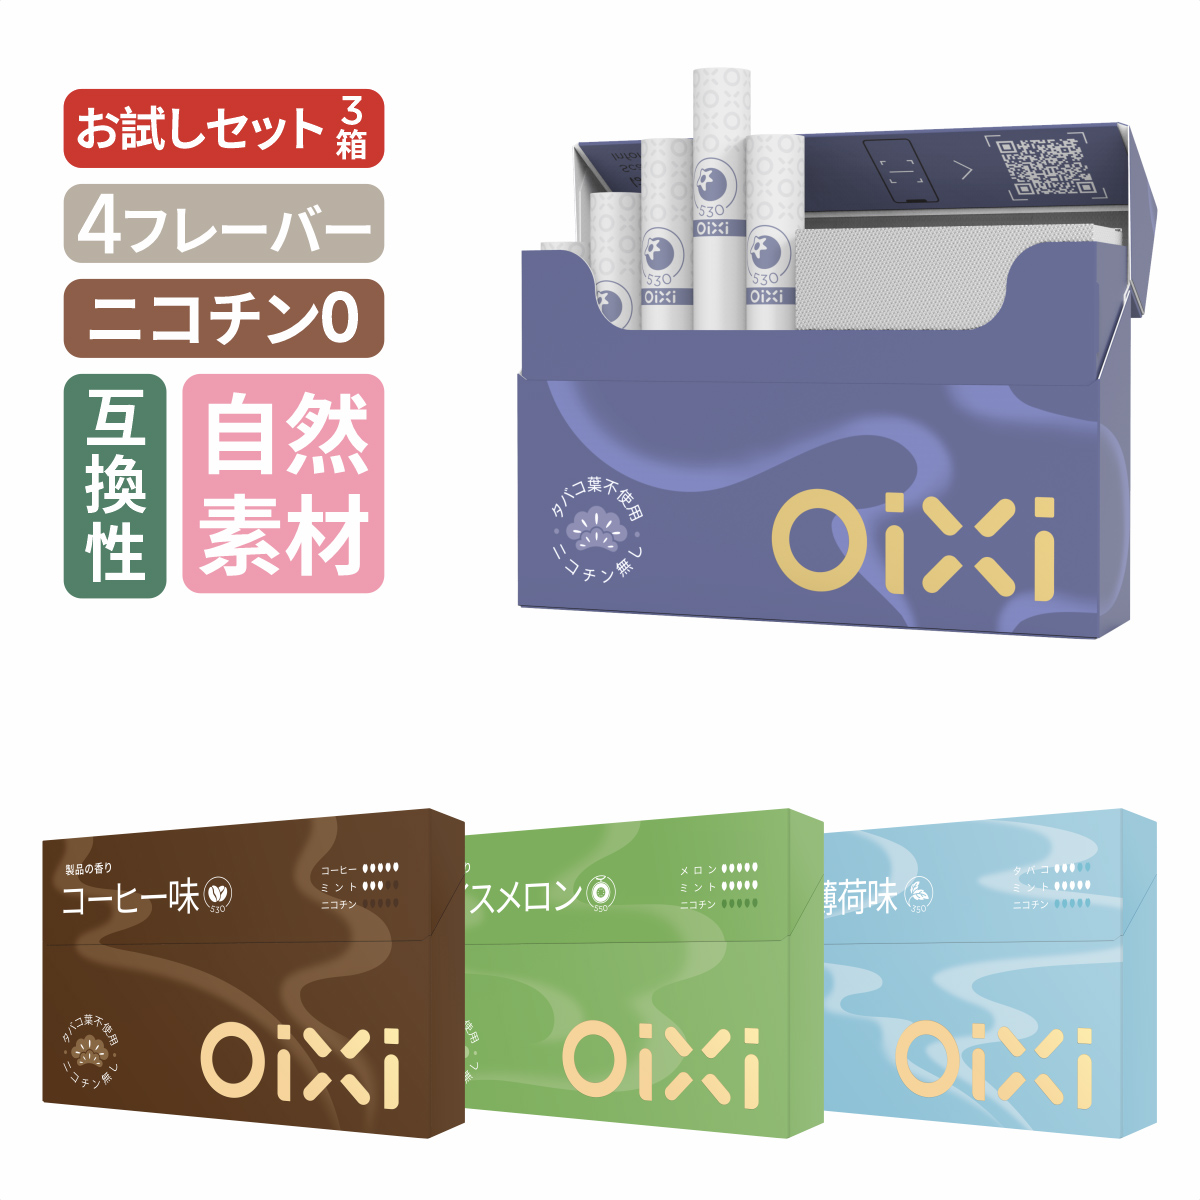 OiXi(コーヒー味 アイスメロン 爽快薄荷味 ブルーベリー味)ヒートスティック 3箱セット「お試しセット」 禁煙タバコ ニコチンゼロ 加熱式タバコ